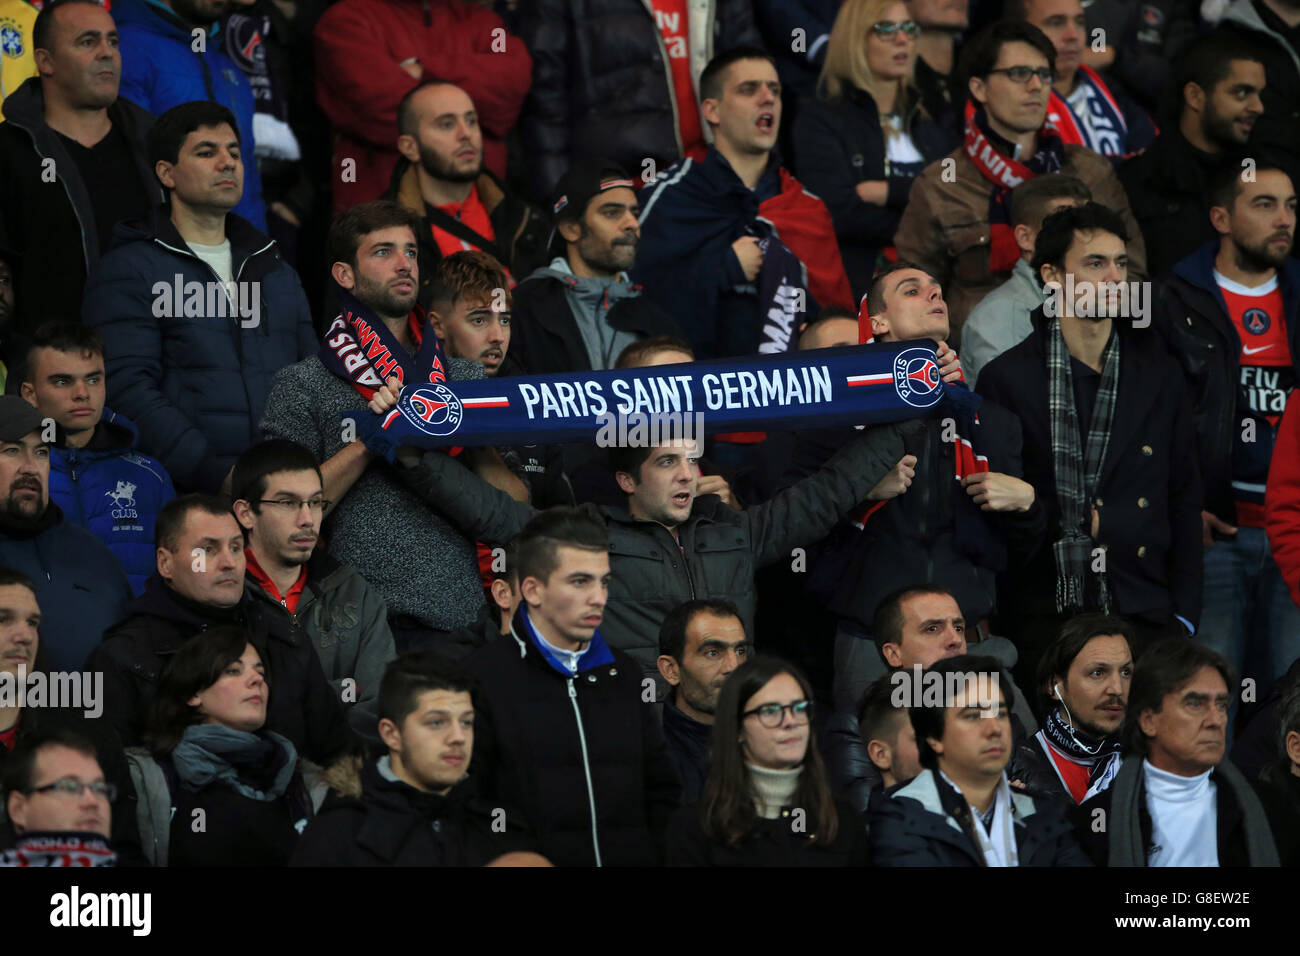 Paris Saint-Germain fans in the stands at the Parc Des Princes Stock Photo